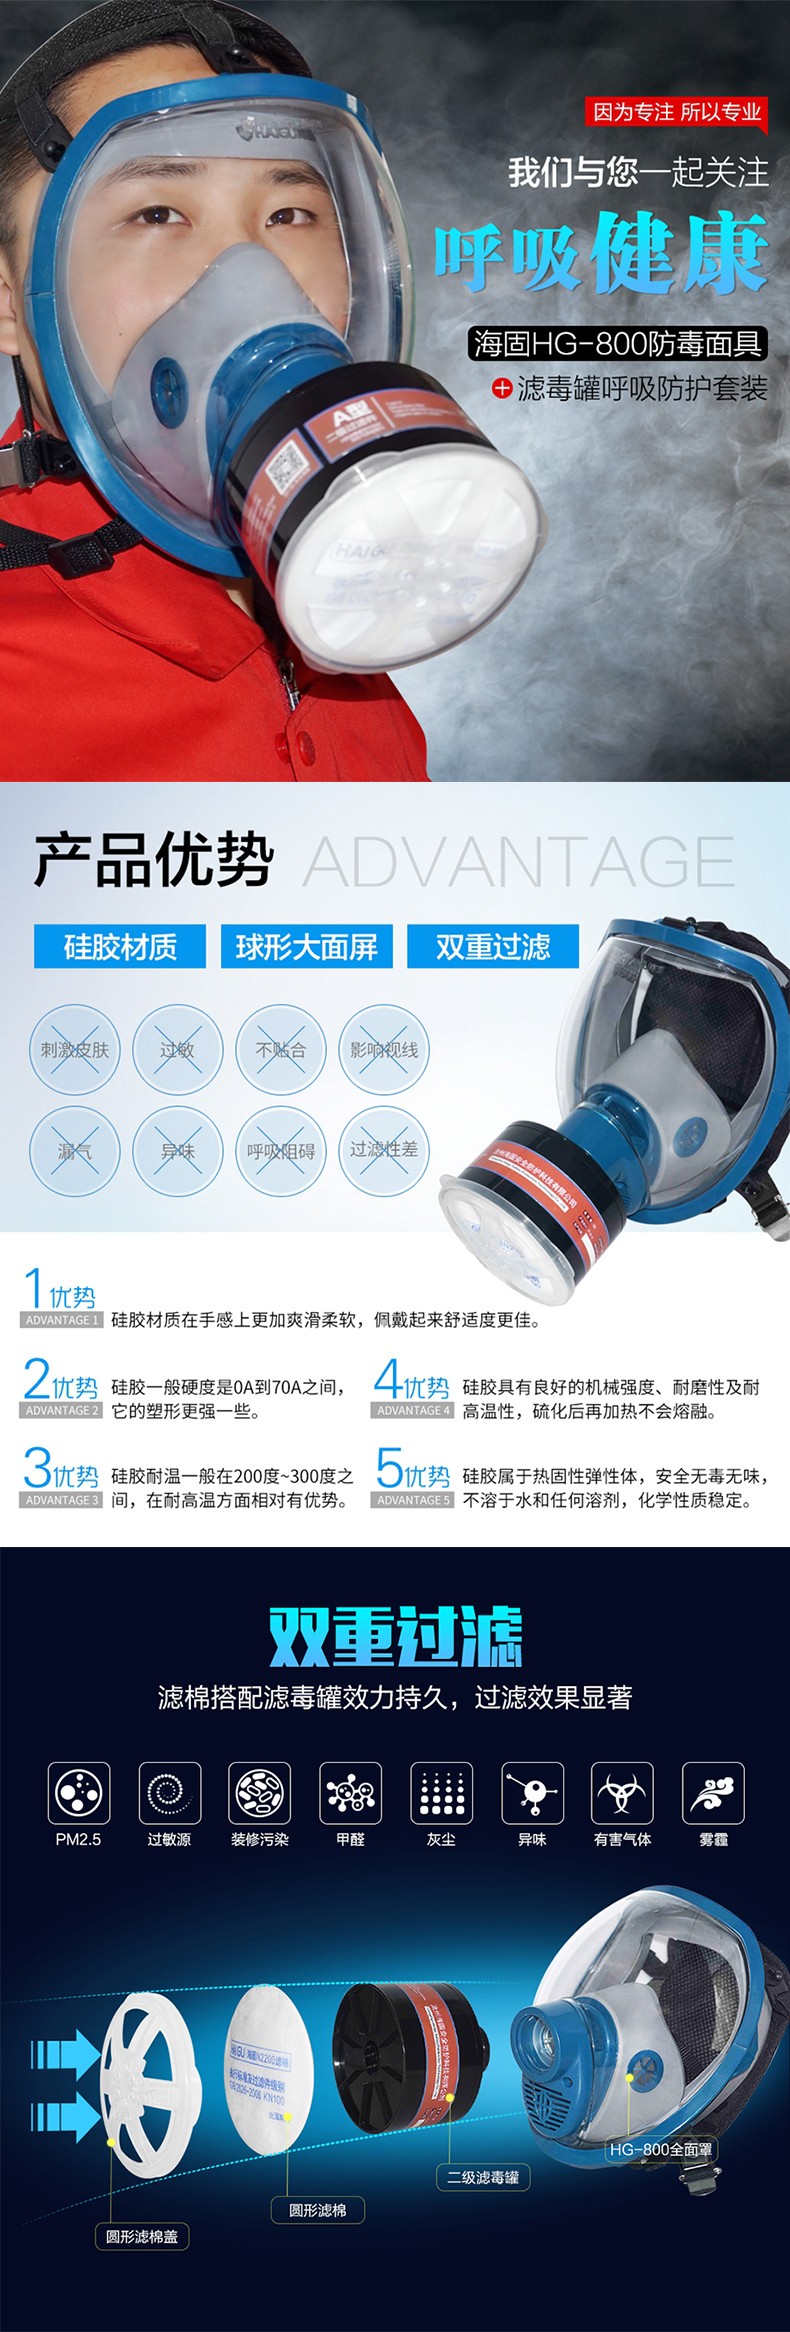 海固HG-800 P-CO-2一氧化碳全面罩防毒面具图片